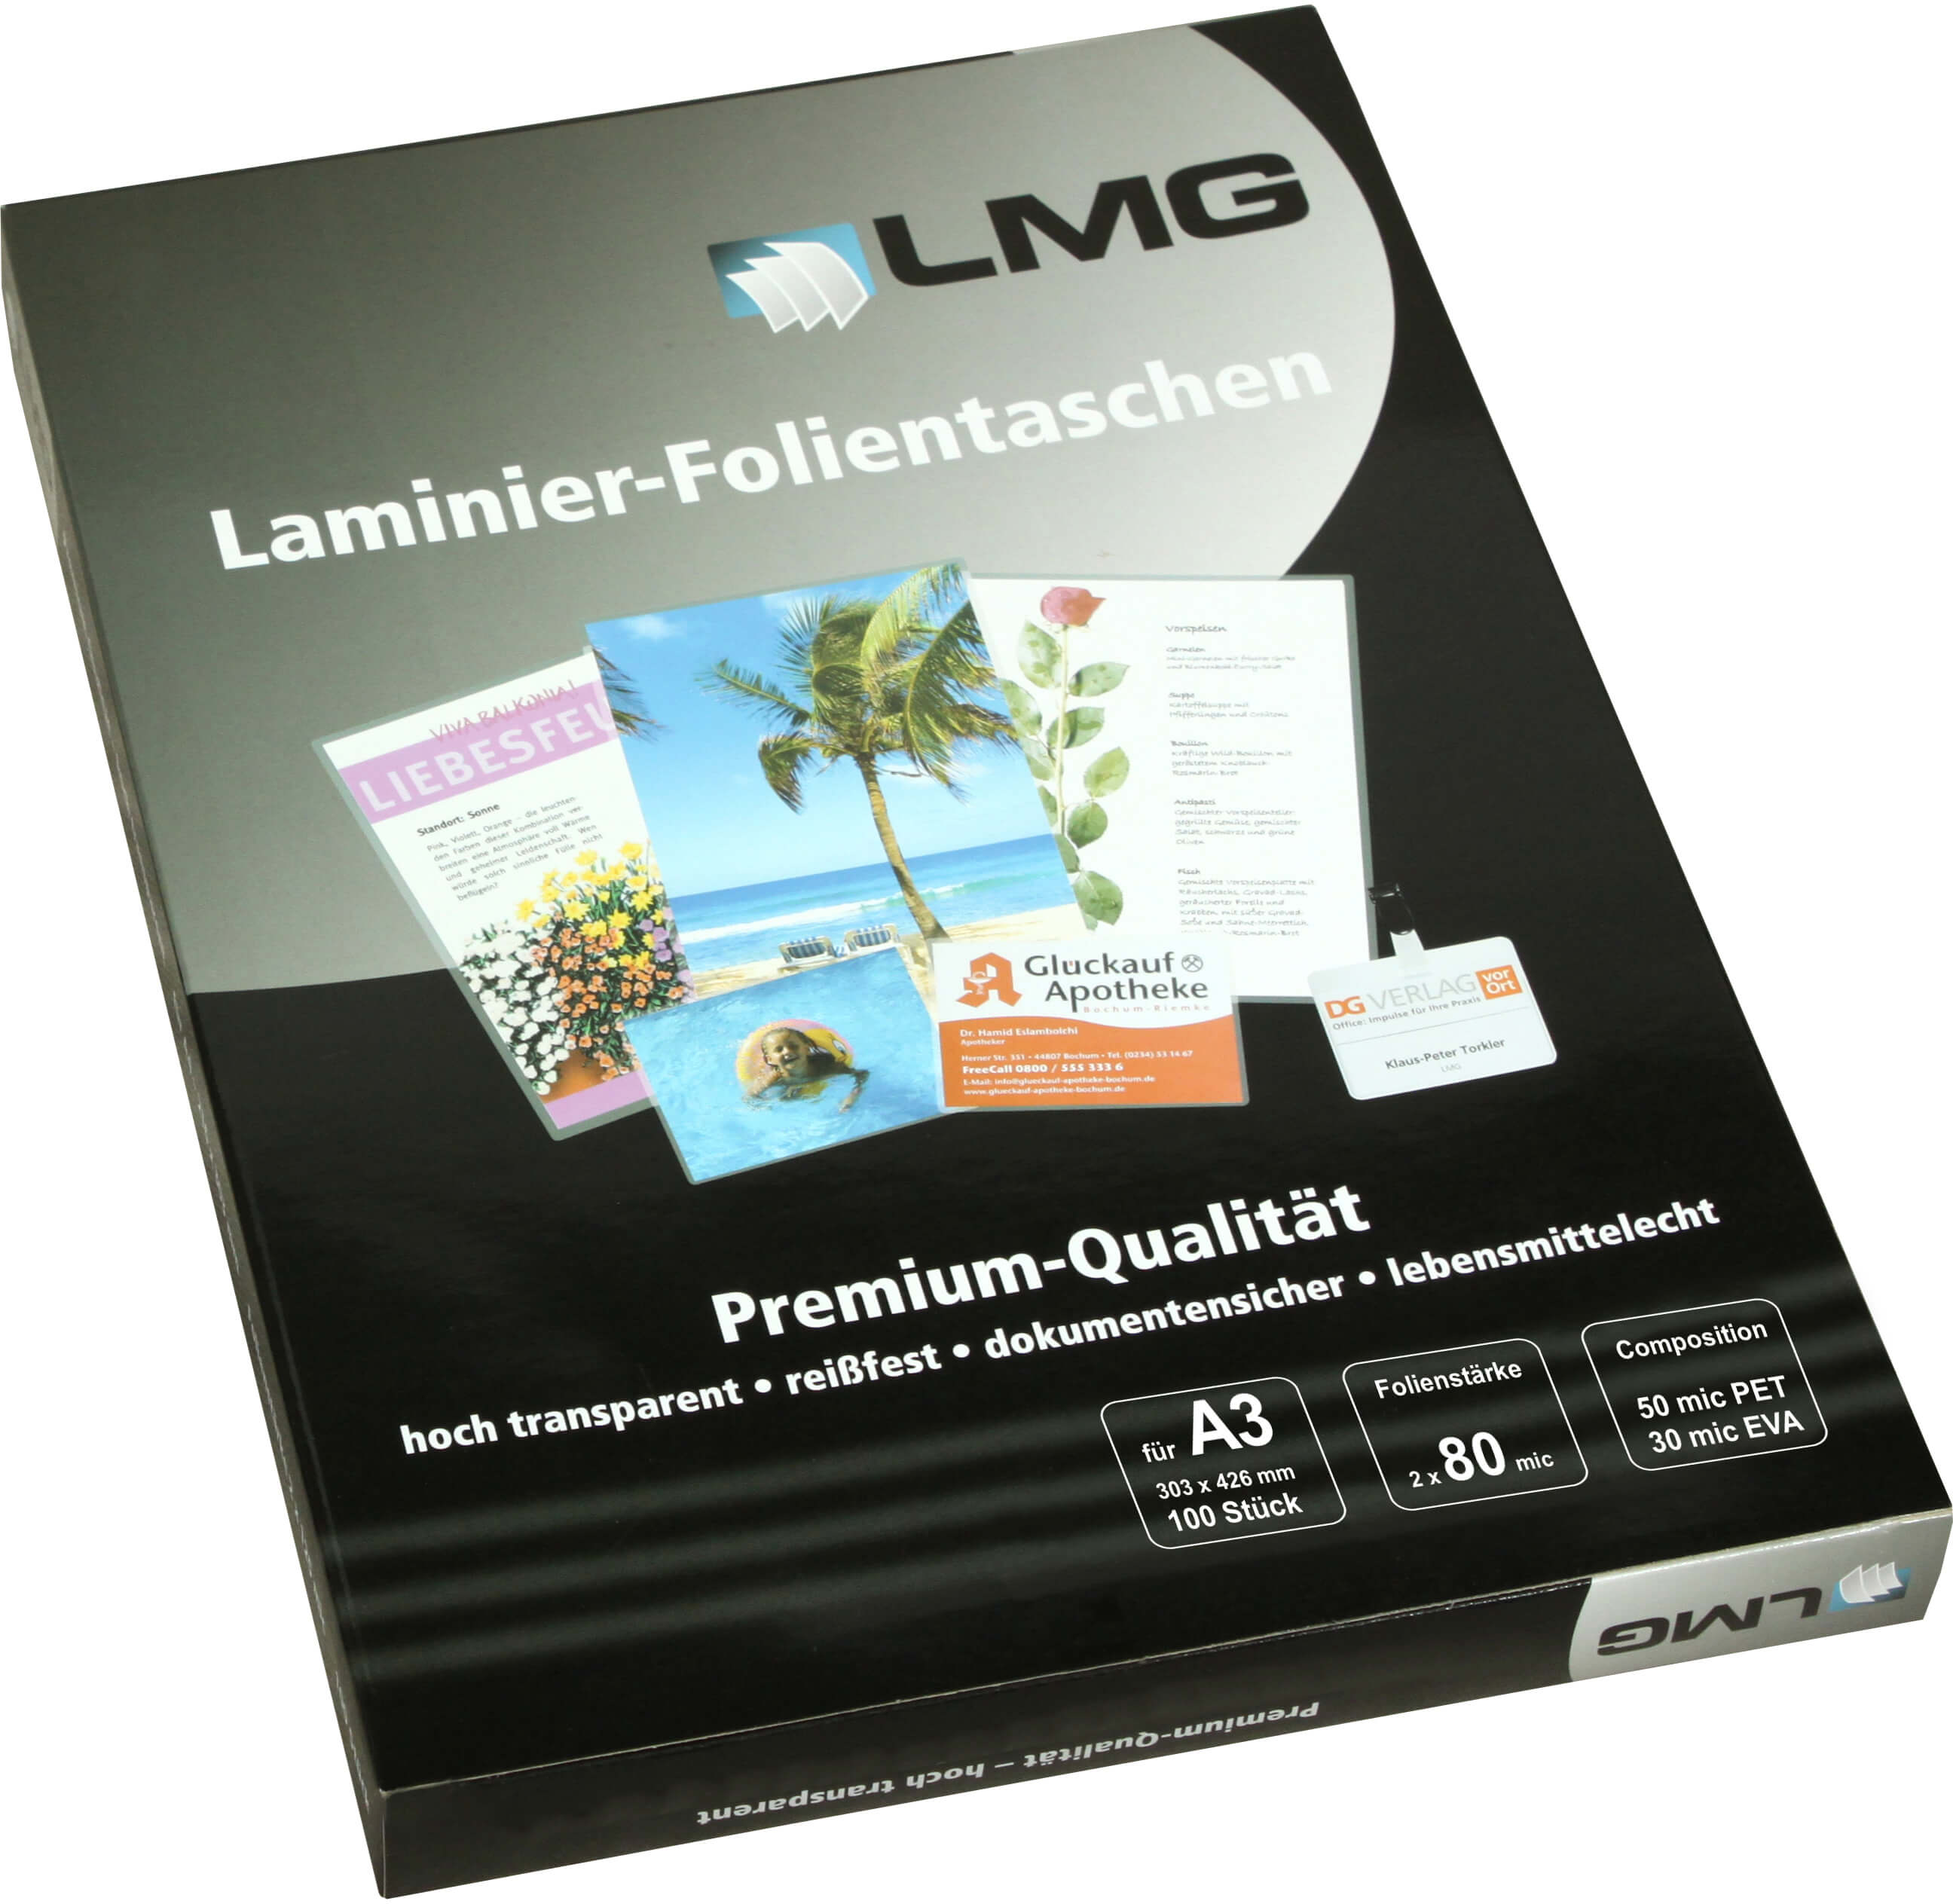 Laminierfolien A3 (303 x 426 mm), 2 x 80 mic, glänzend | Bestnr. LMGA3-80